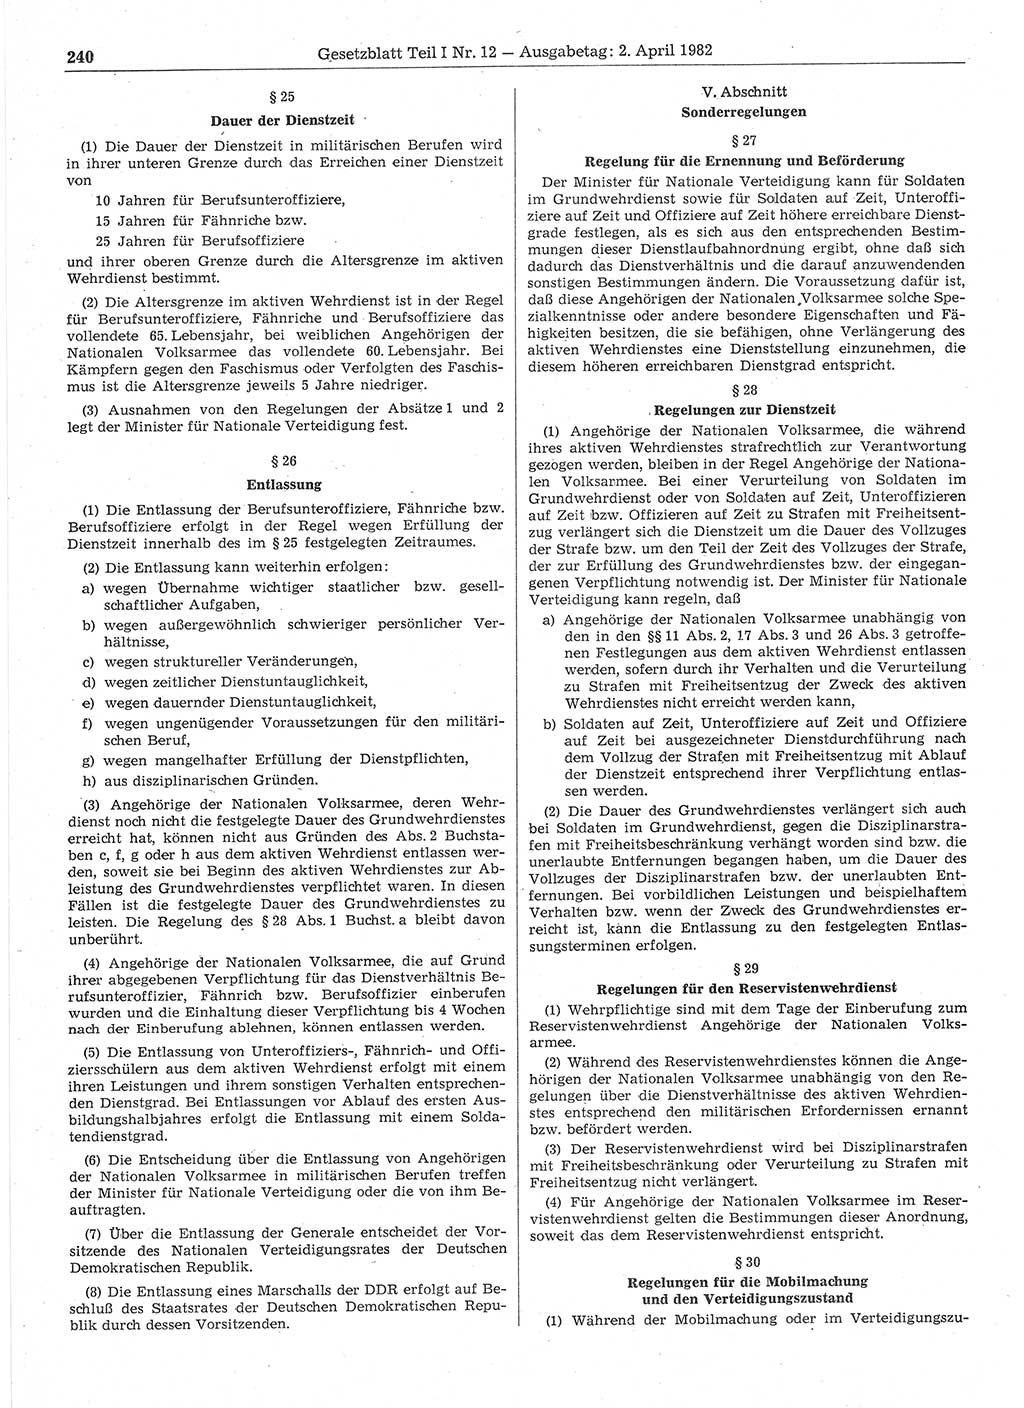 Gesetzblatt (GBl.) der Deutschen Demokratischen Republik (DDR) Teil Ⅰ 1982, Seite 240 (GBl. DDR Ⅰ 1982, S. 240)